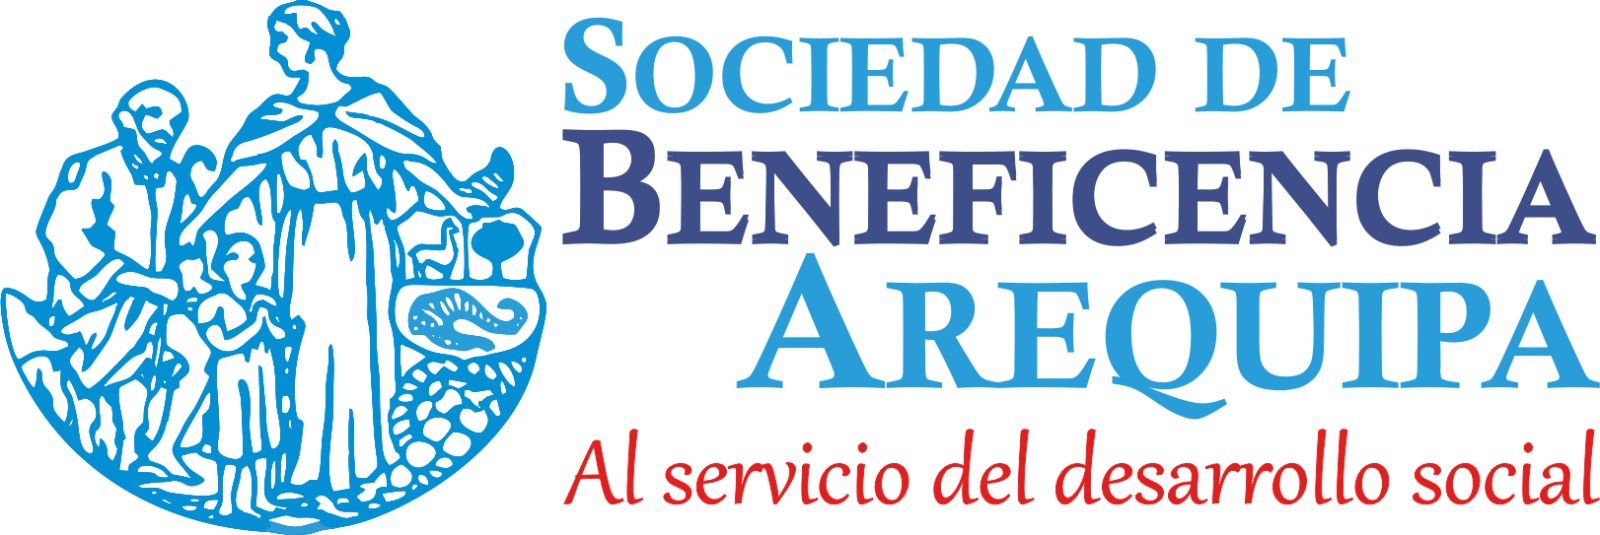 Sociedad Beneficencia de Arequipa